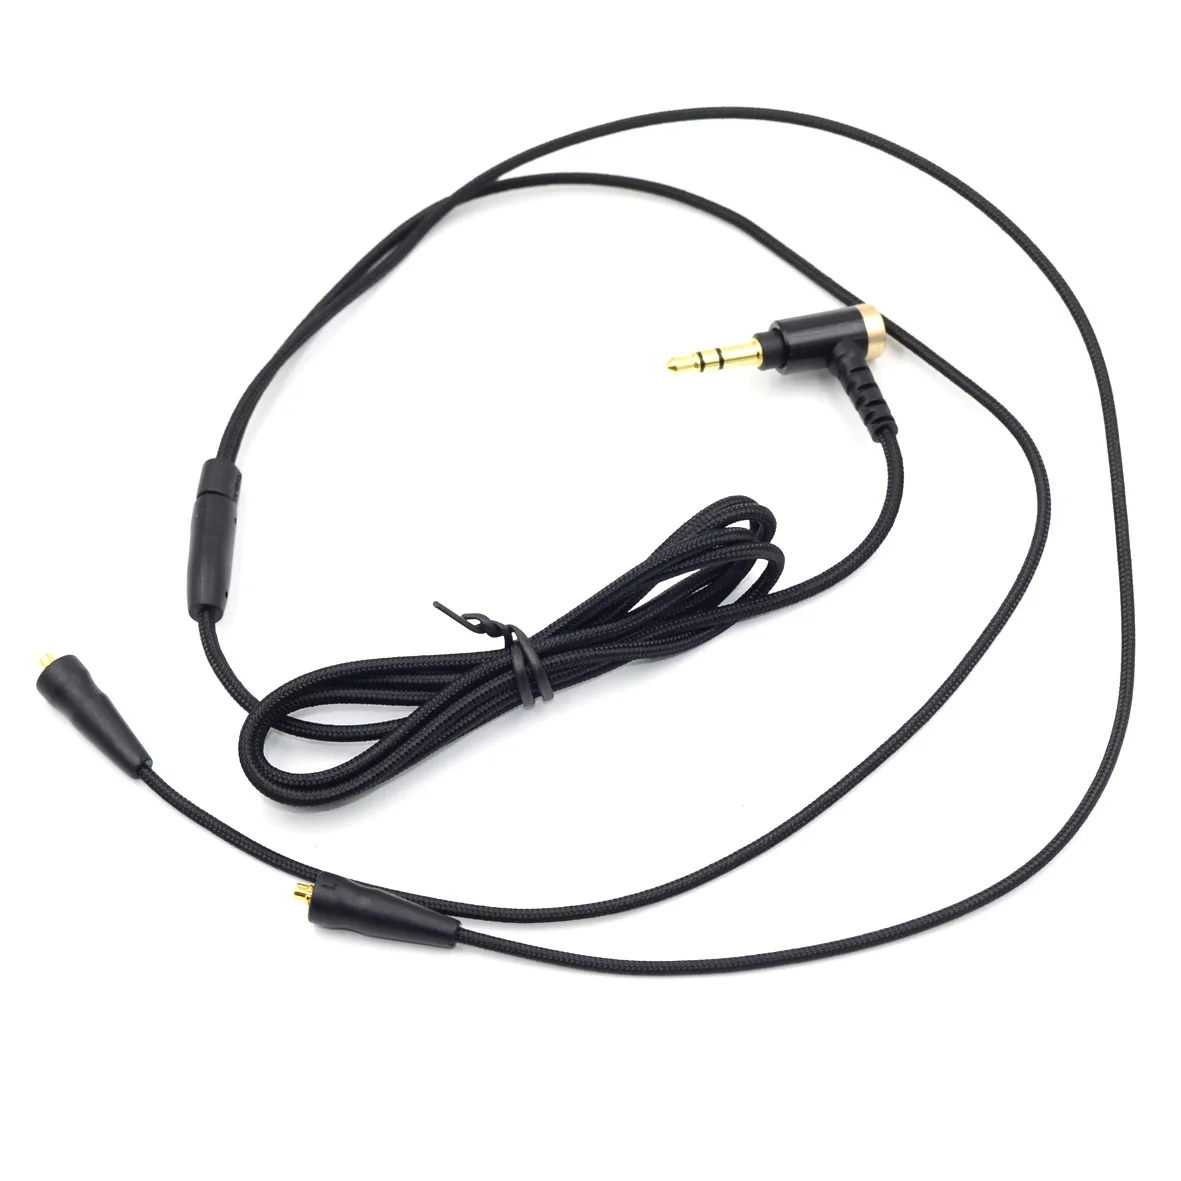 Cable de repuesto para auriculares JVC HA-FX1200, Cable de Audio de alta...